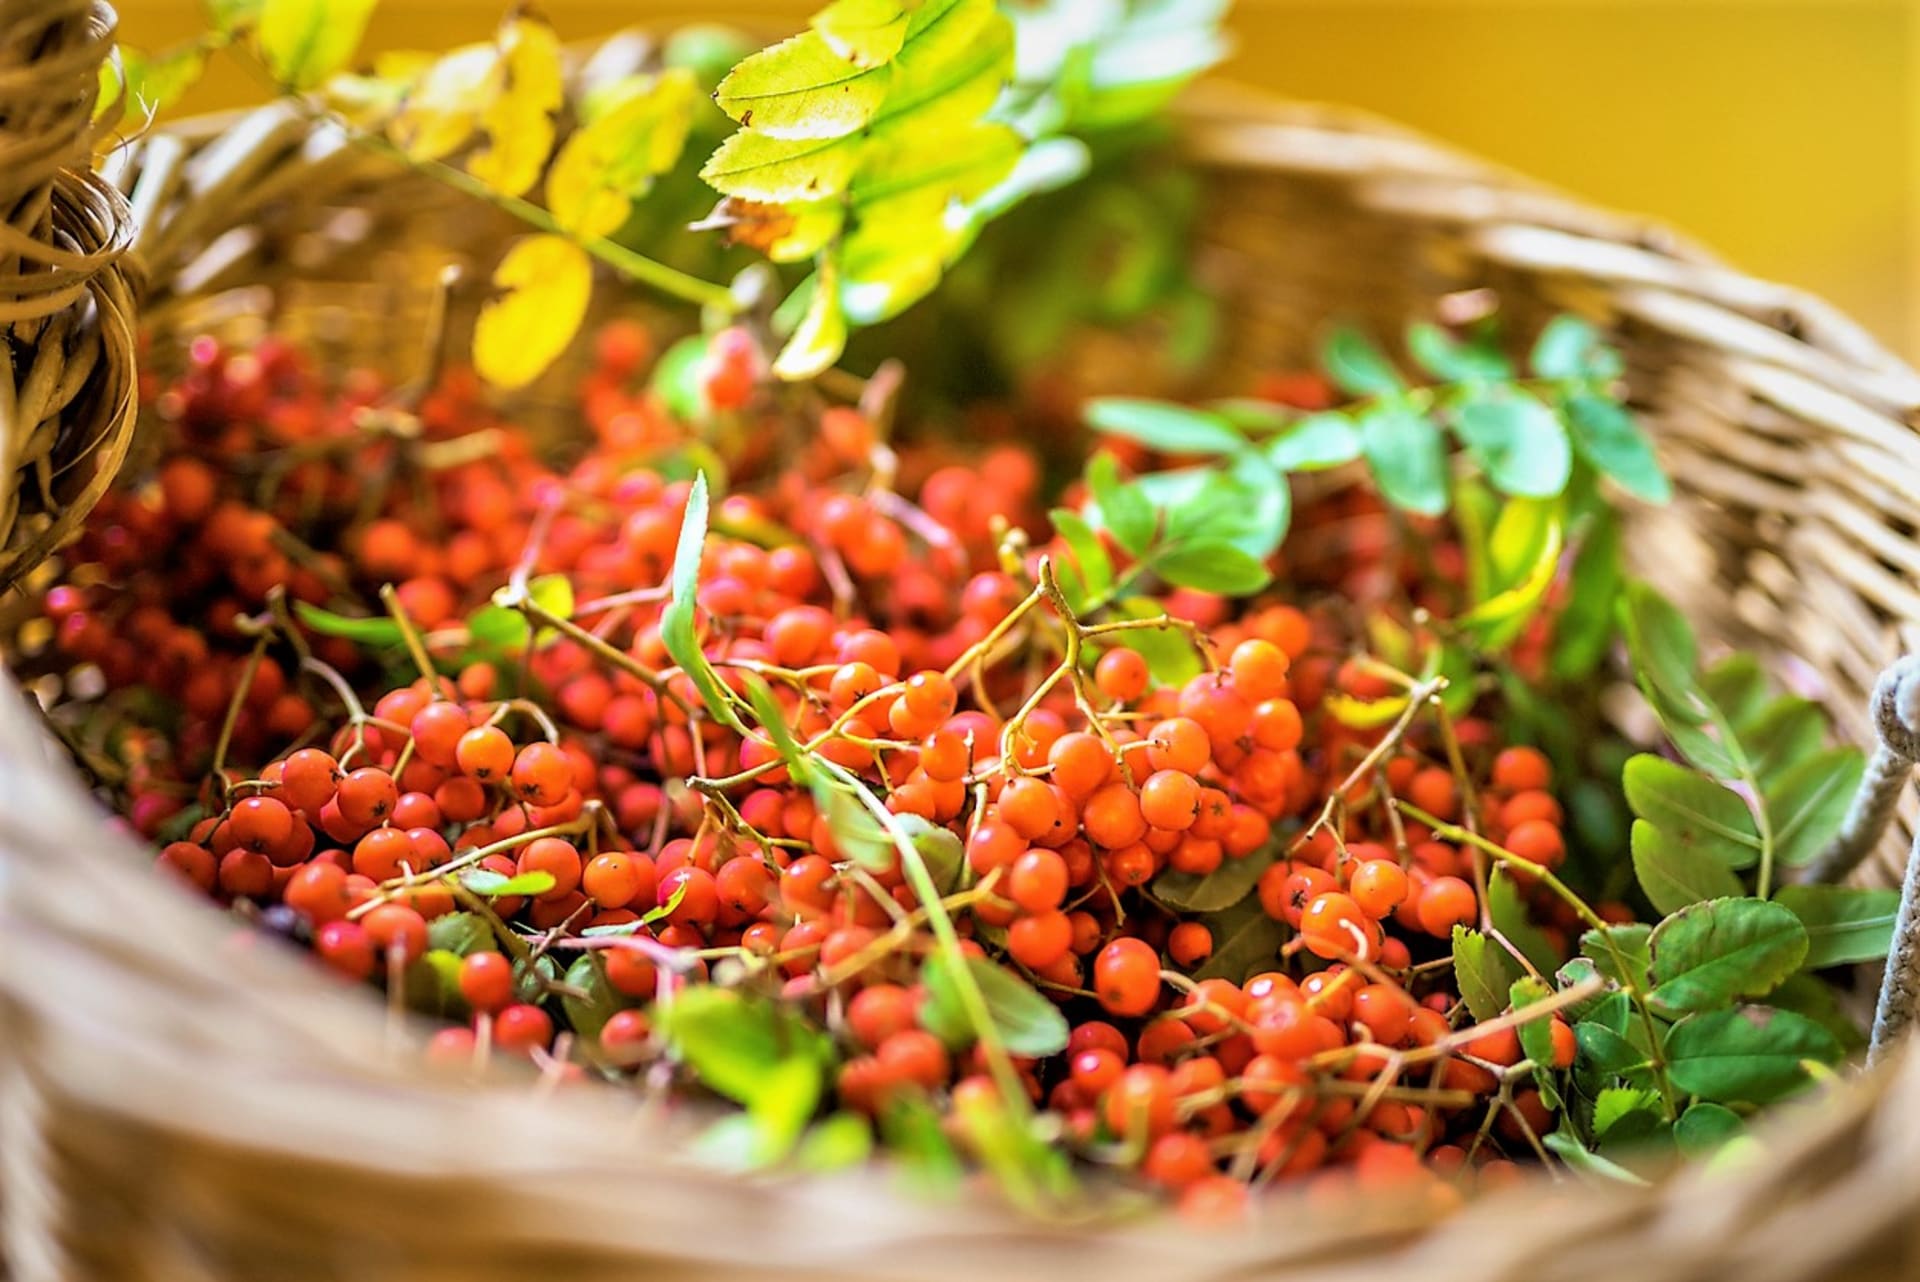 Rowanberry imajo širok spekter zdravilnih učinkov.  Plodovi borovnice blagodejno vplivajo na sklepe, prebavo in krepijo imunski sistem.